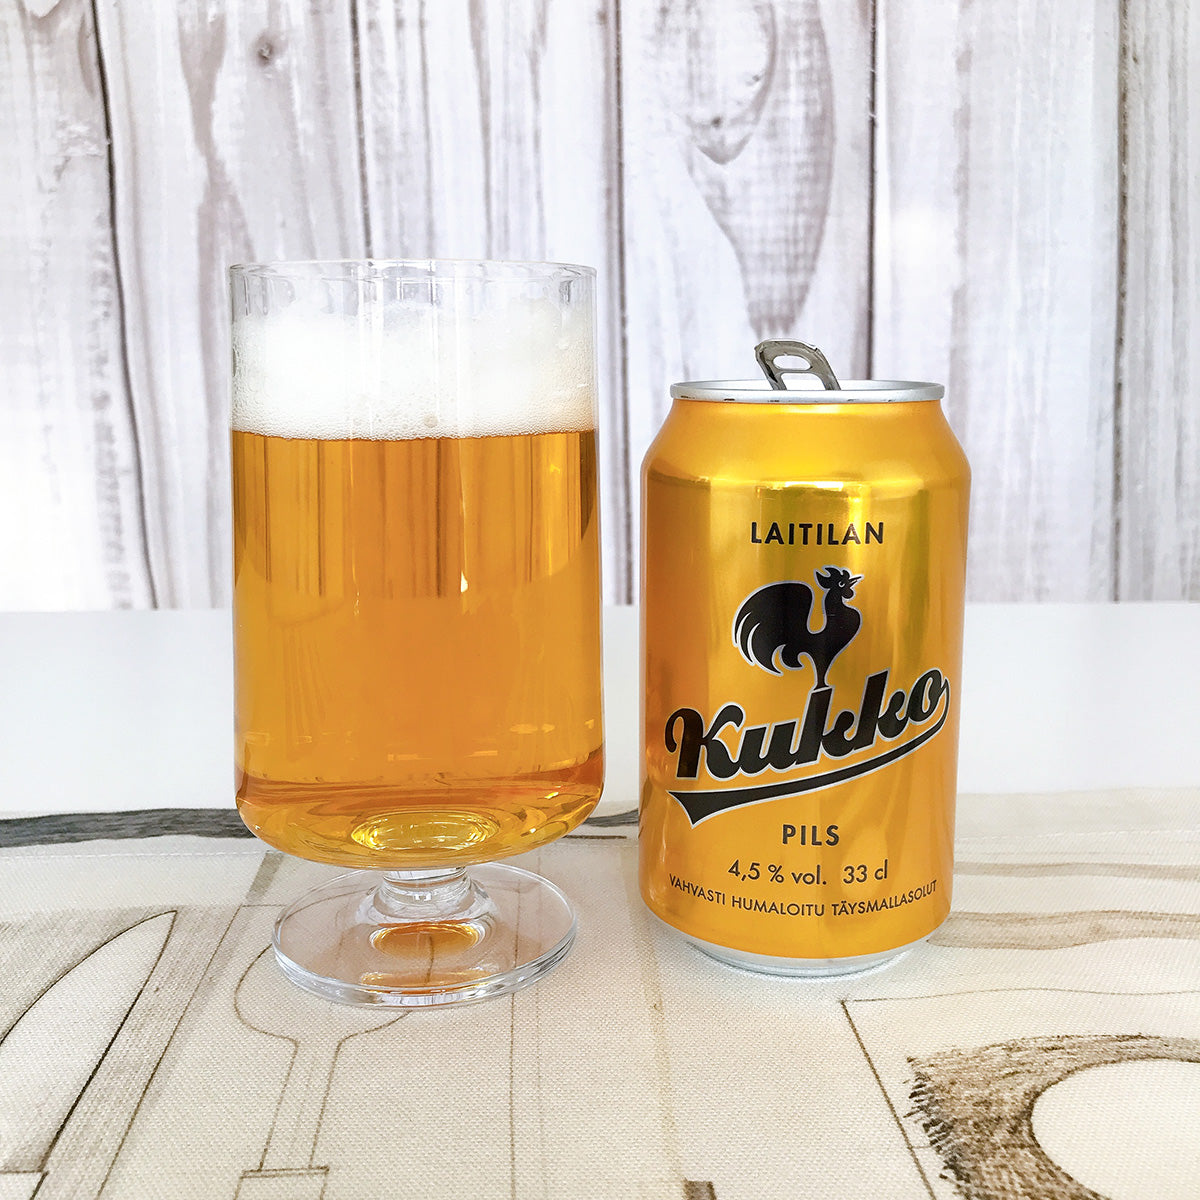 【24缶セット】Laitilan ライティラン Kukko クッコ ビール ピルス 330ml × 24（アルコール飲料)